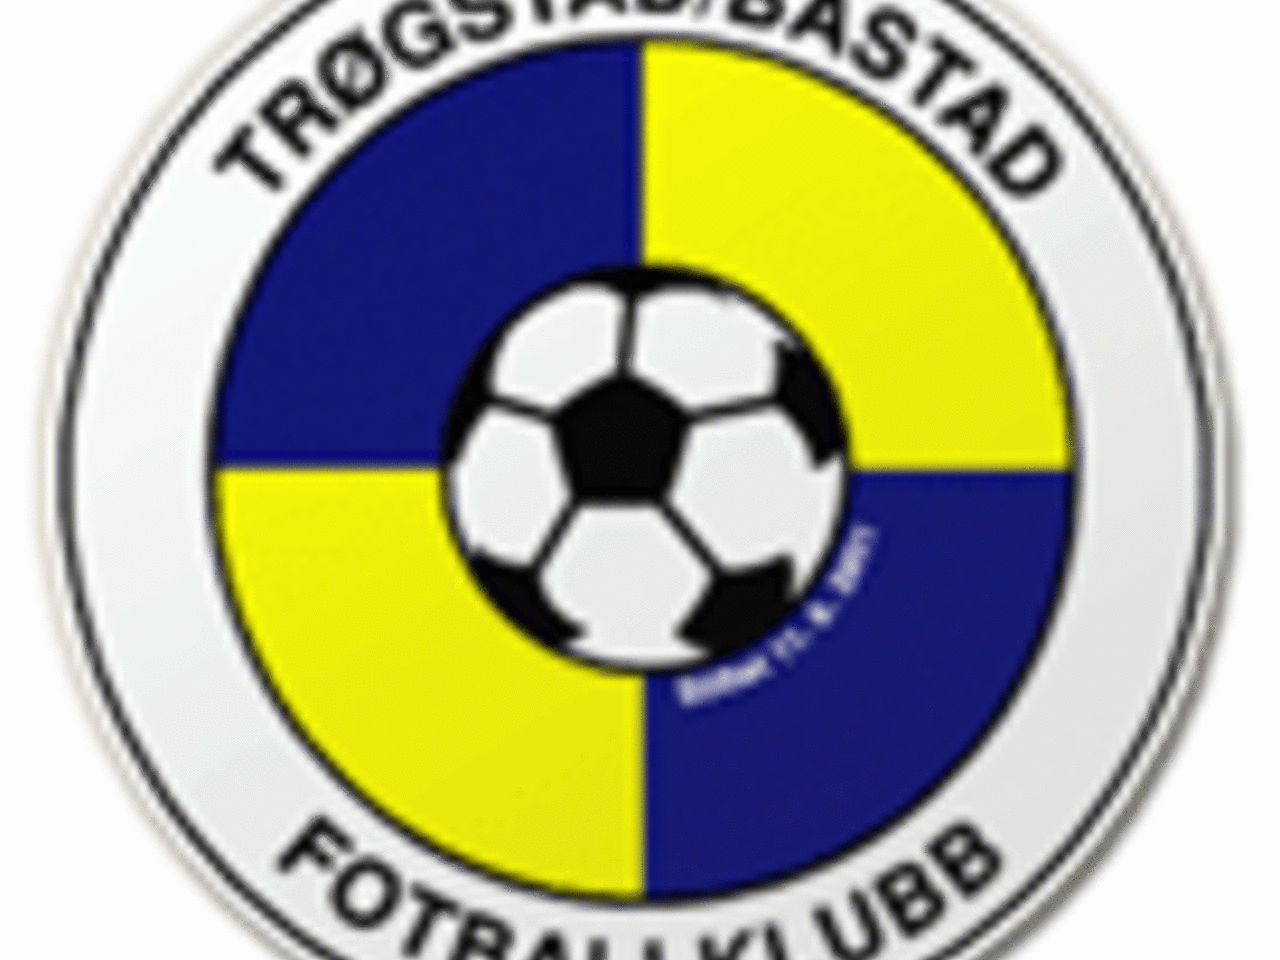 TrøBå logo